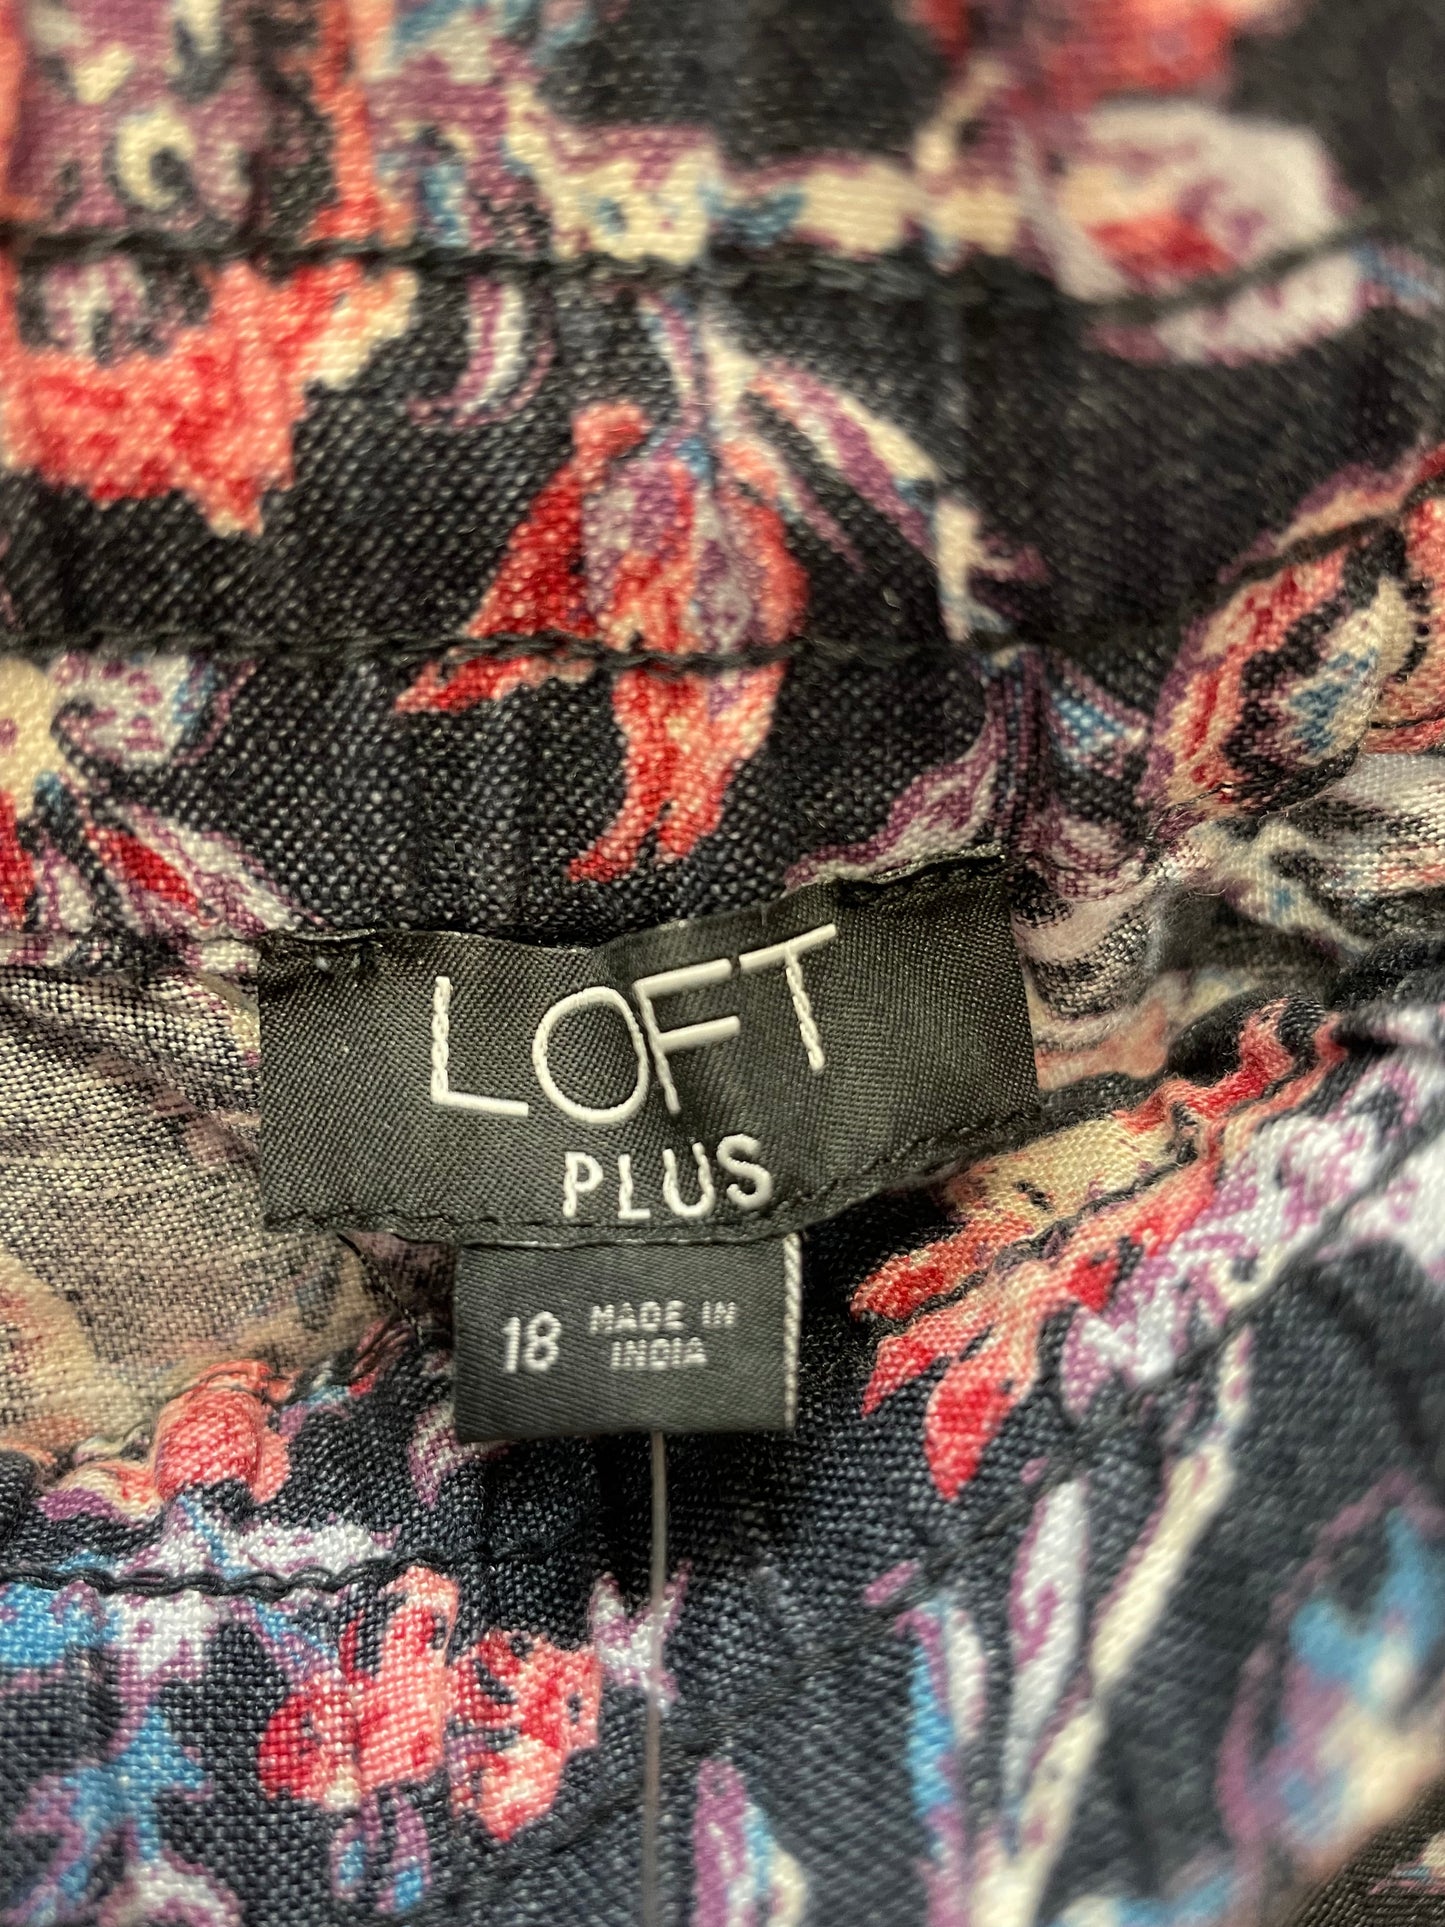 Floral Print Shorts Loft, Size 18